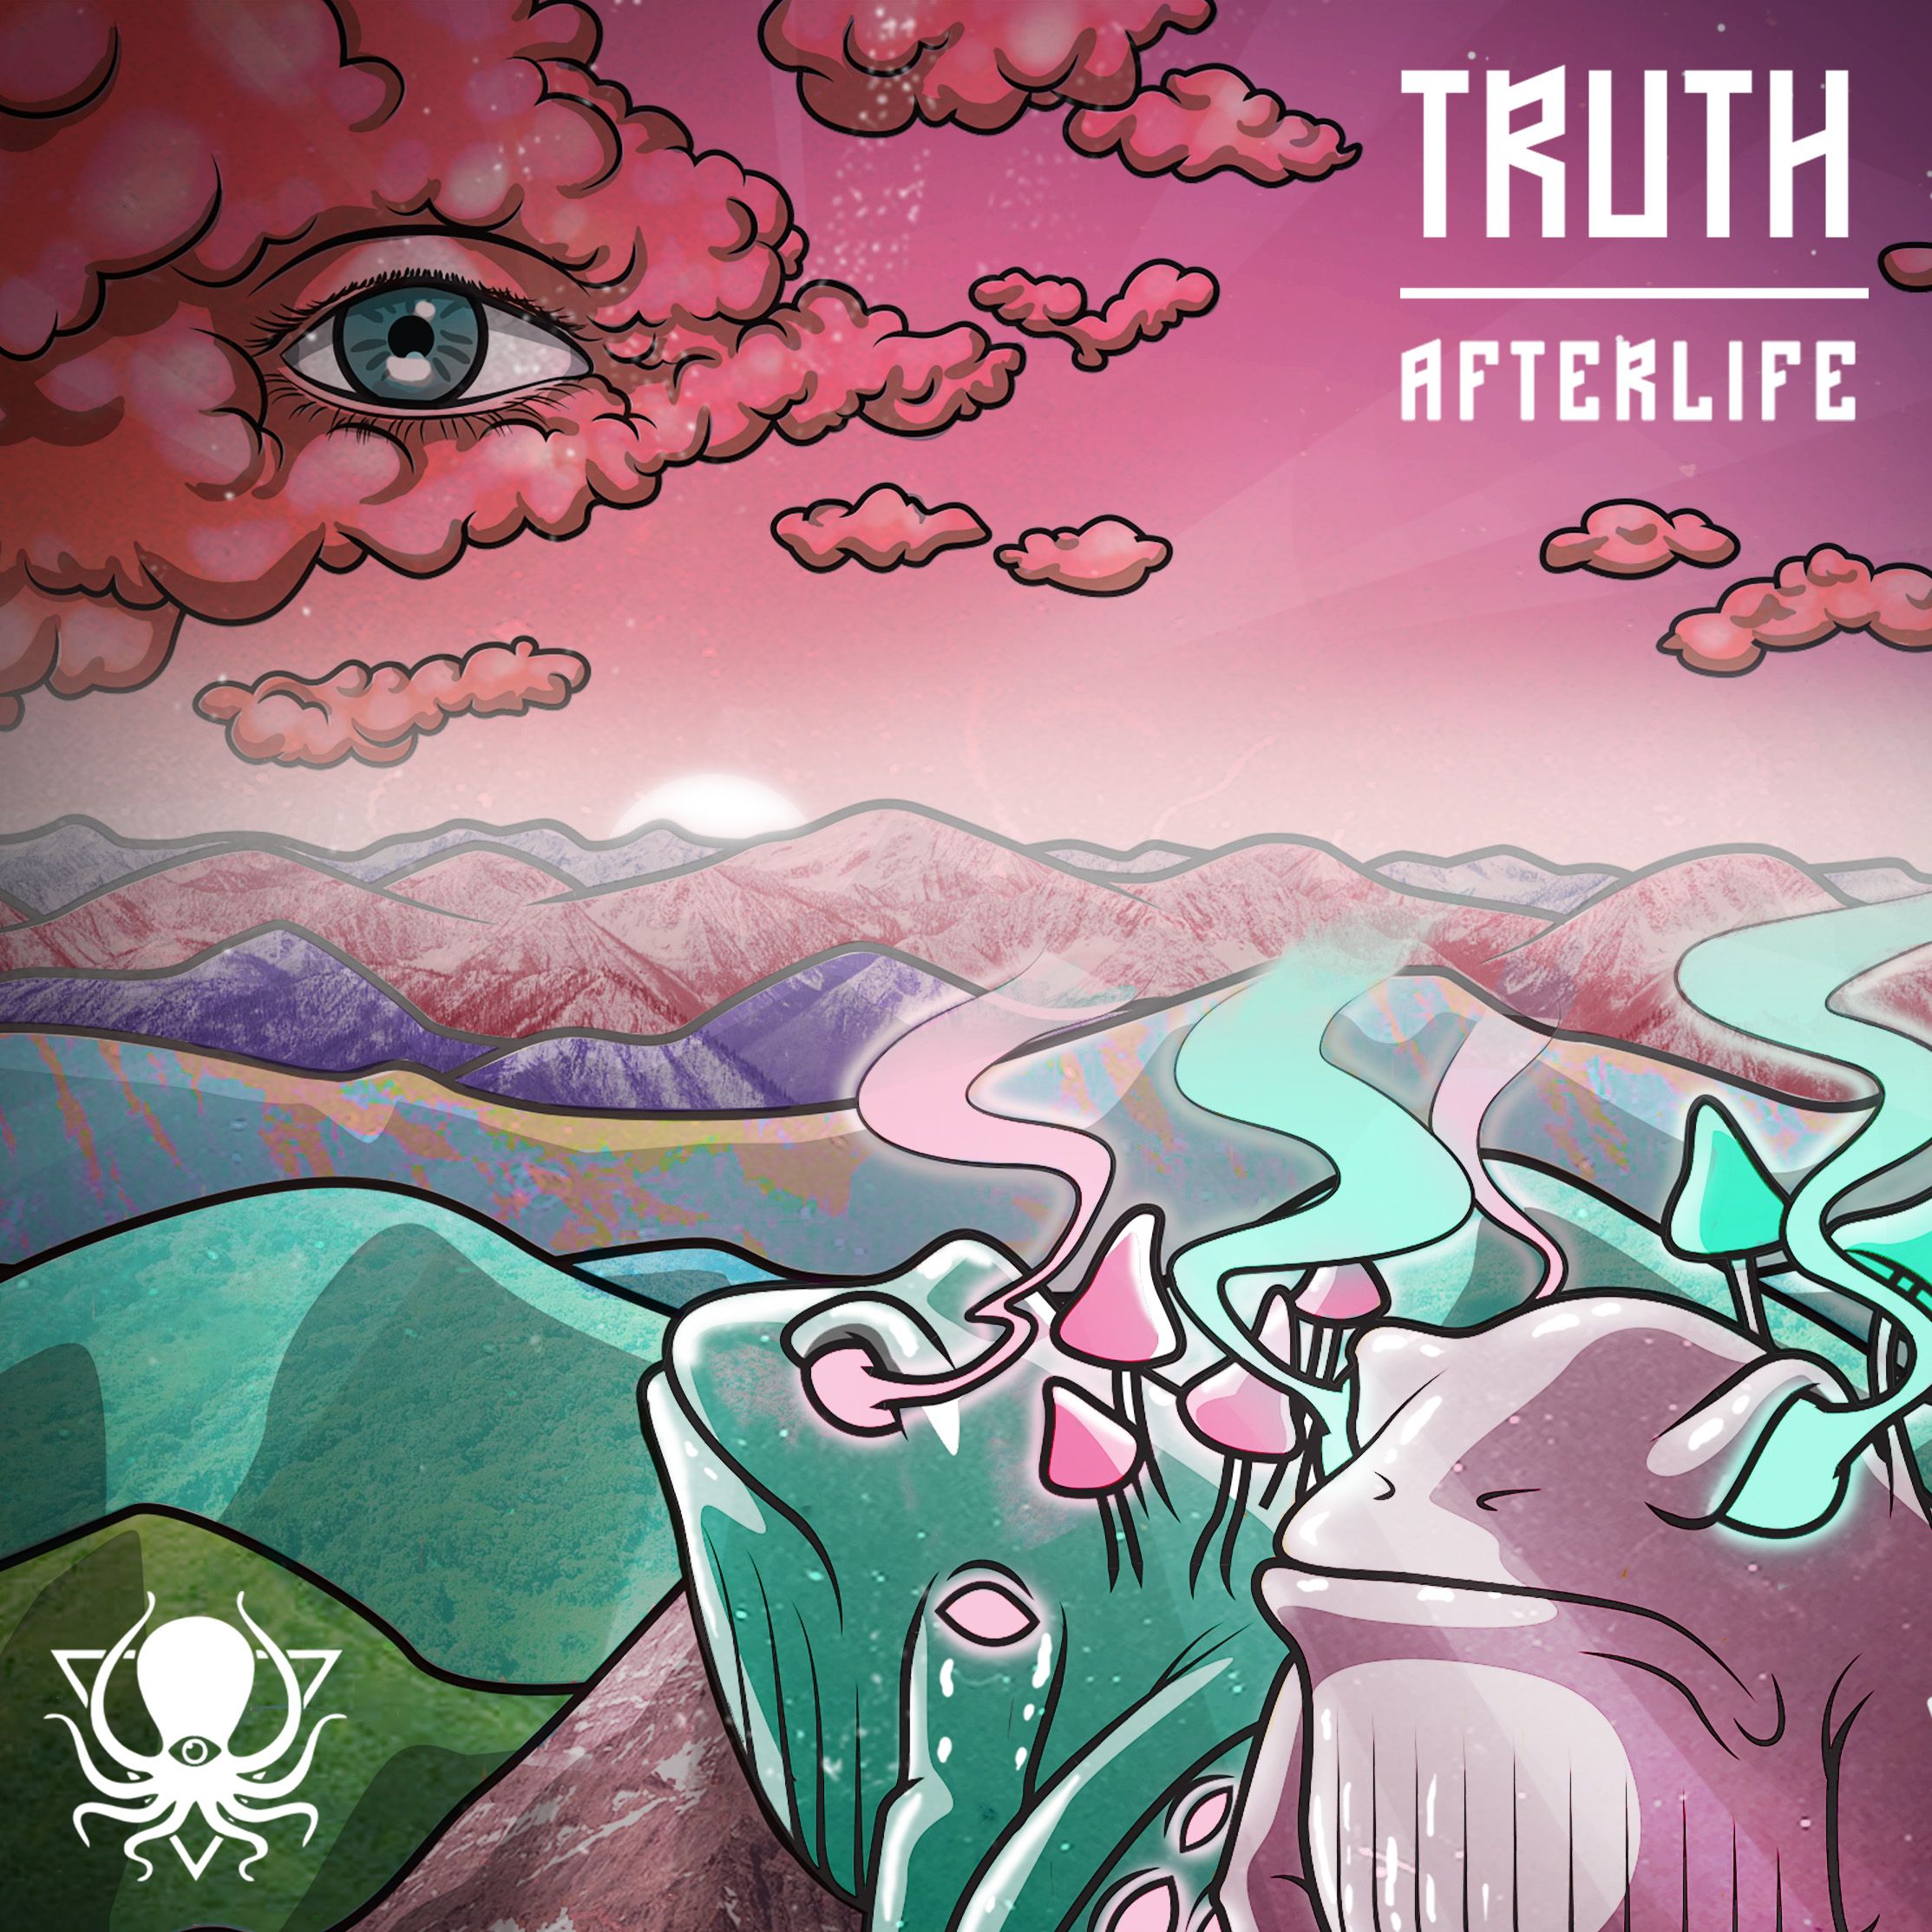 I-download Truth - Afterlife (DDD095)